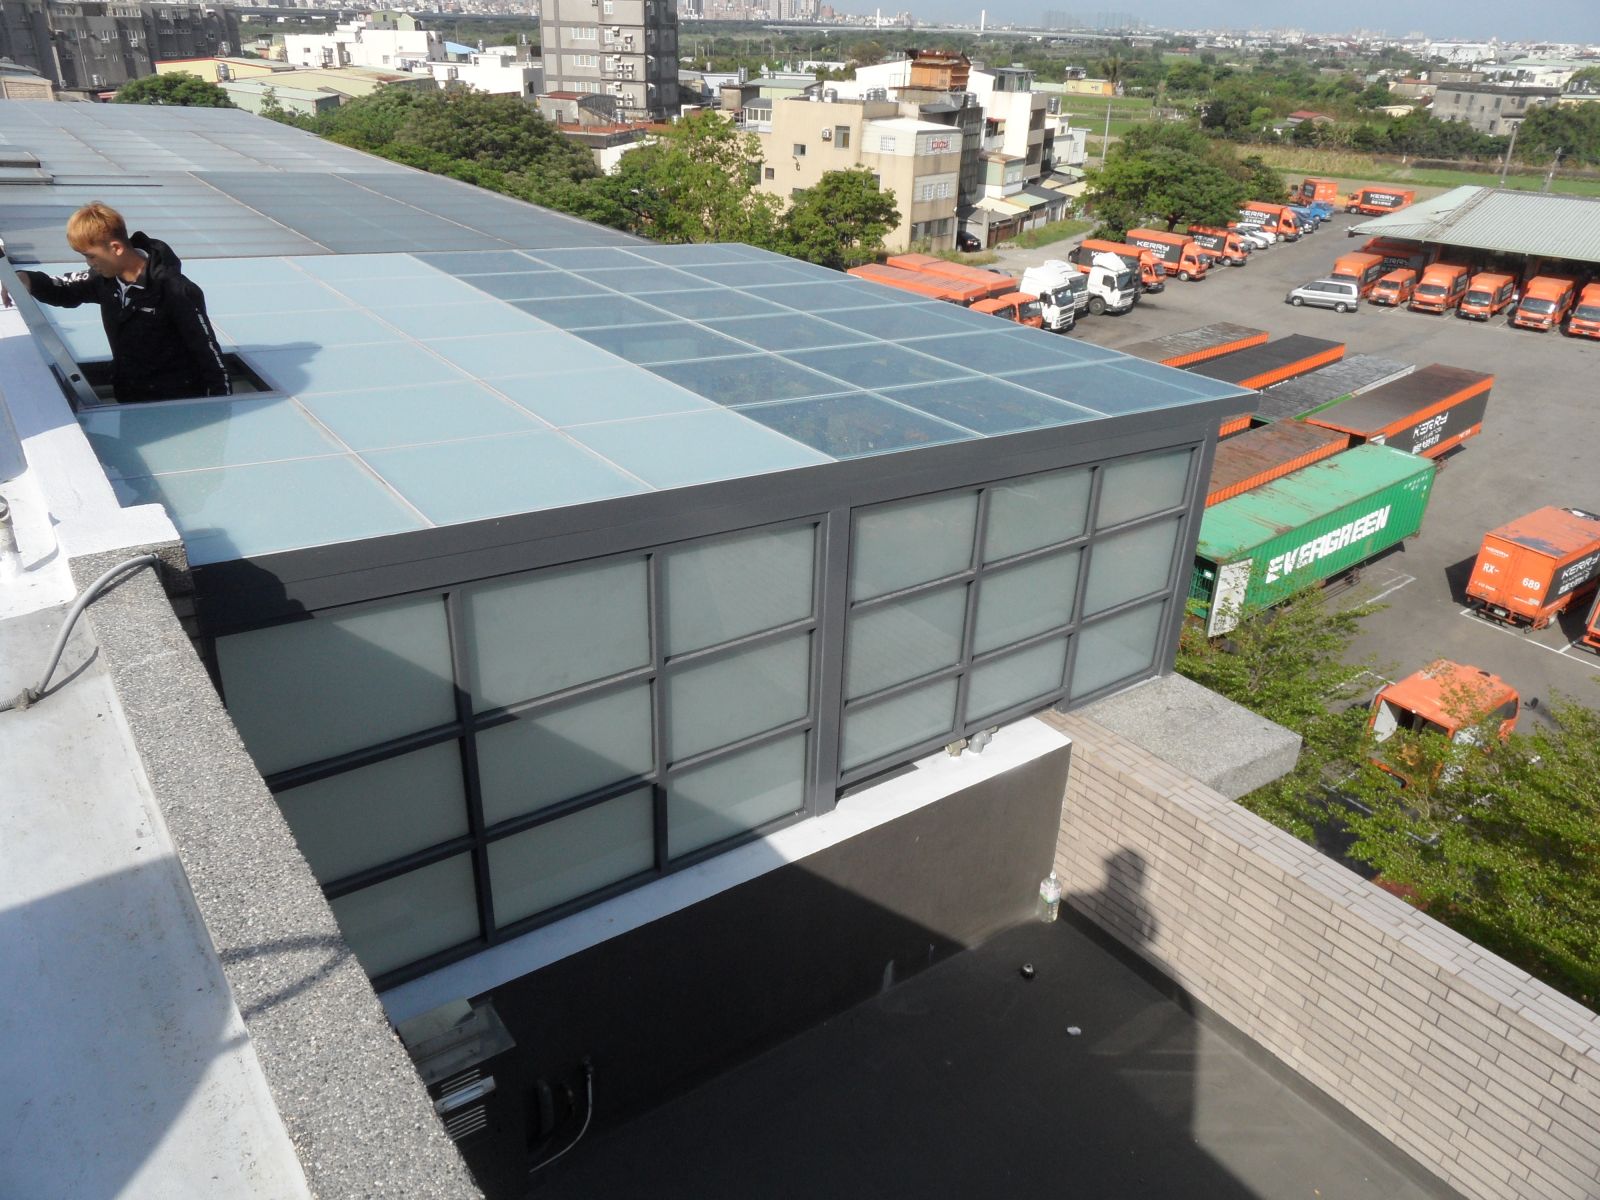 屋頂玻璃採用5+5膠合玻璃採用搭配性區域,1/2為遮陽性(電器區) , 1/2為透光